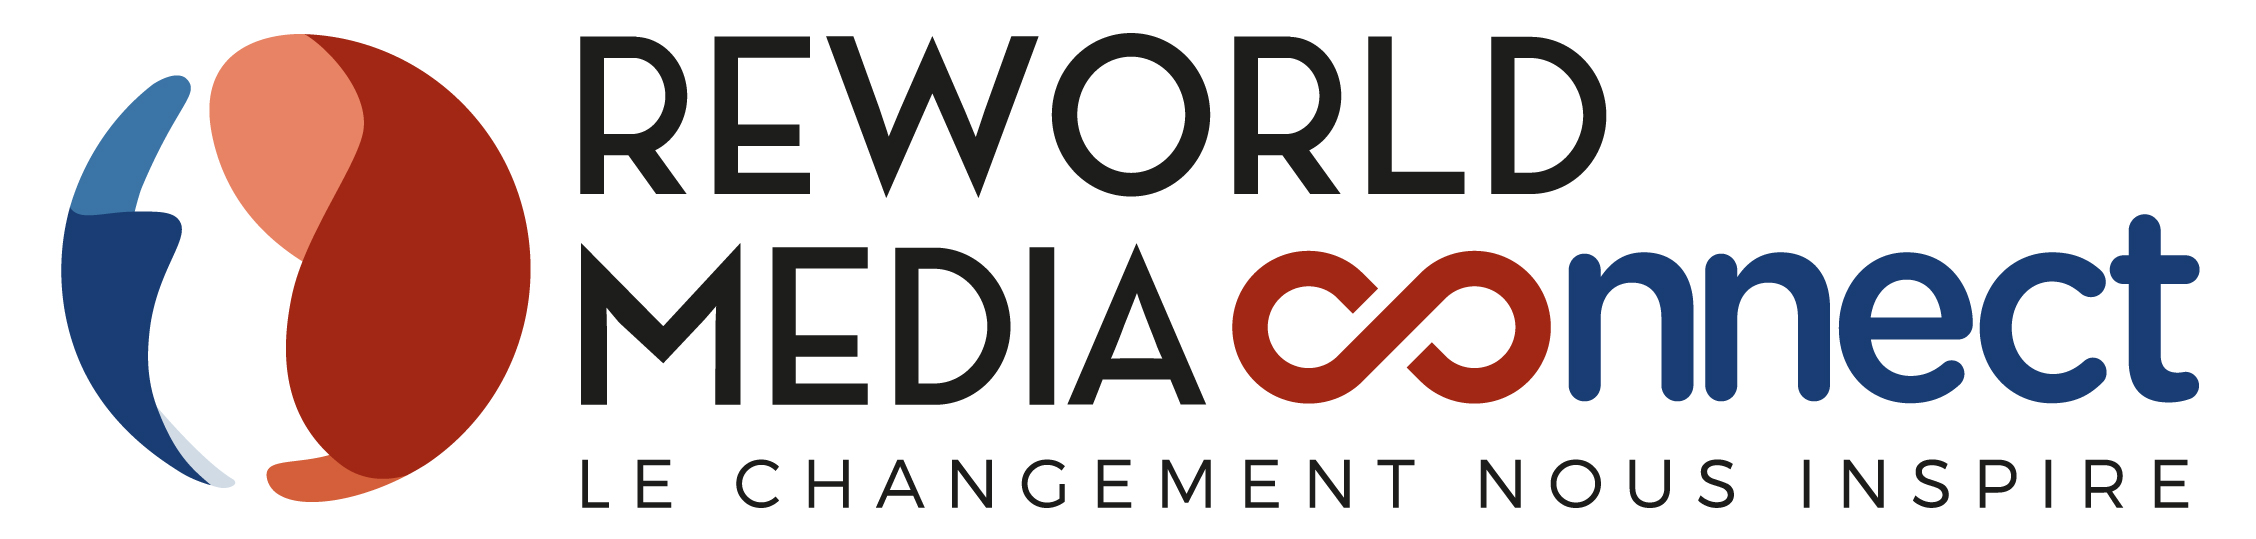 logo reworld media connect le changement nous inspire